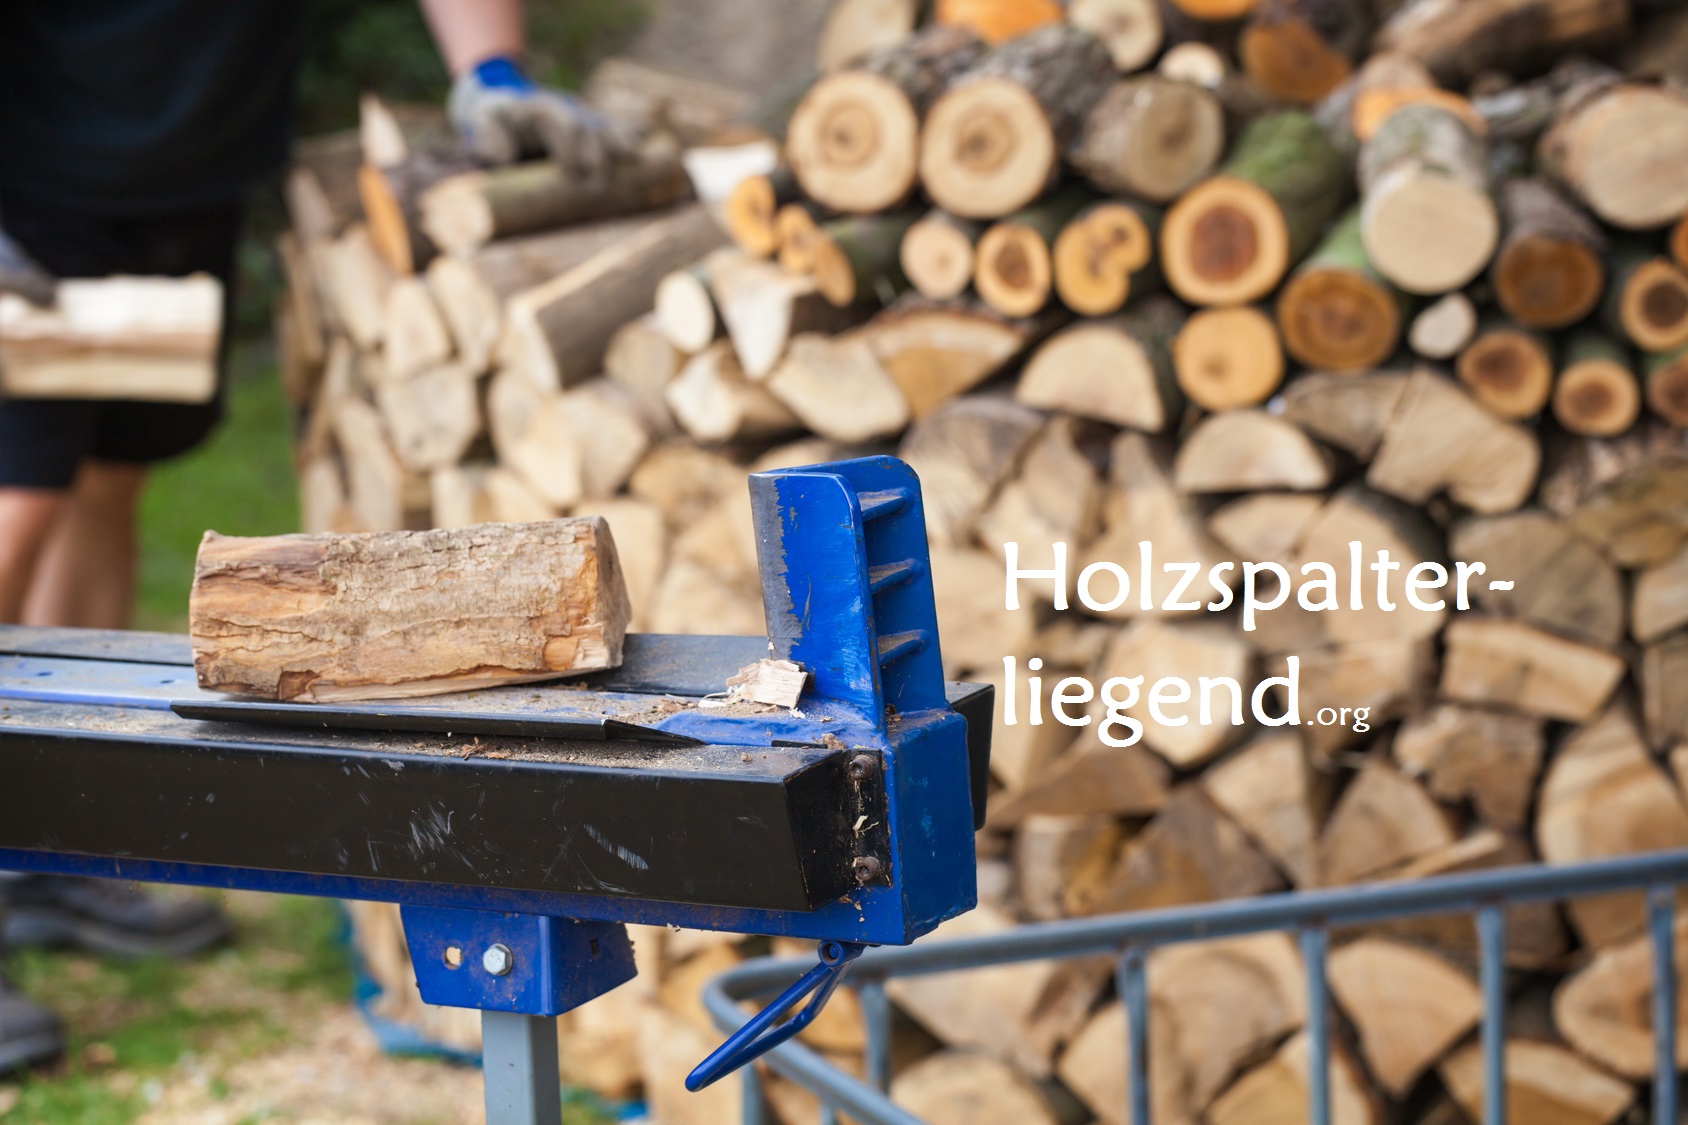 Bituxx mechanischer Holzspalter Brennholz Holzklotz liegend Fuß betrieben 1,2T 